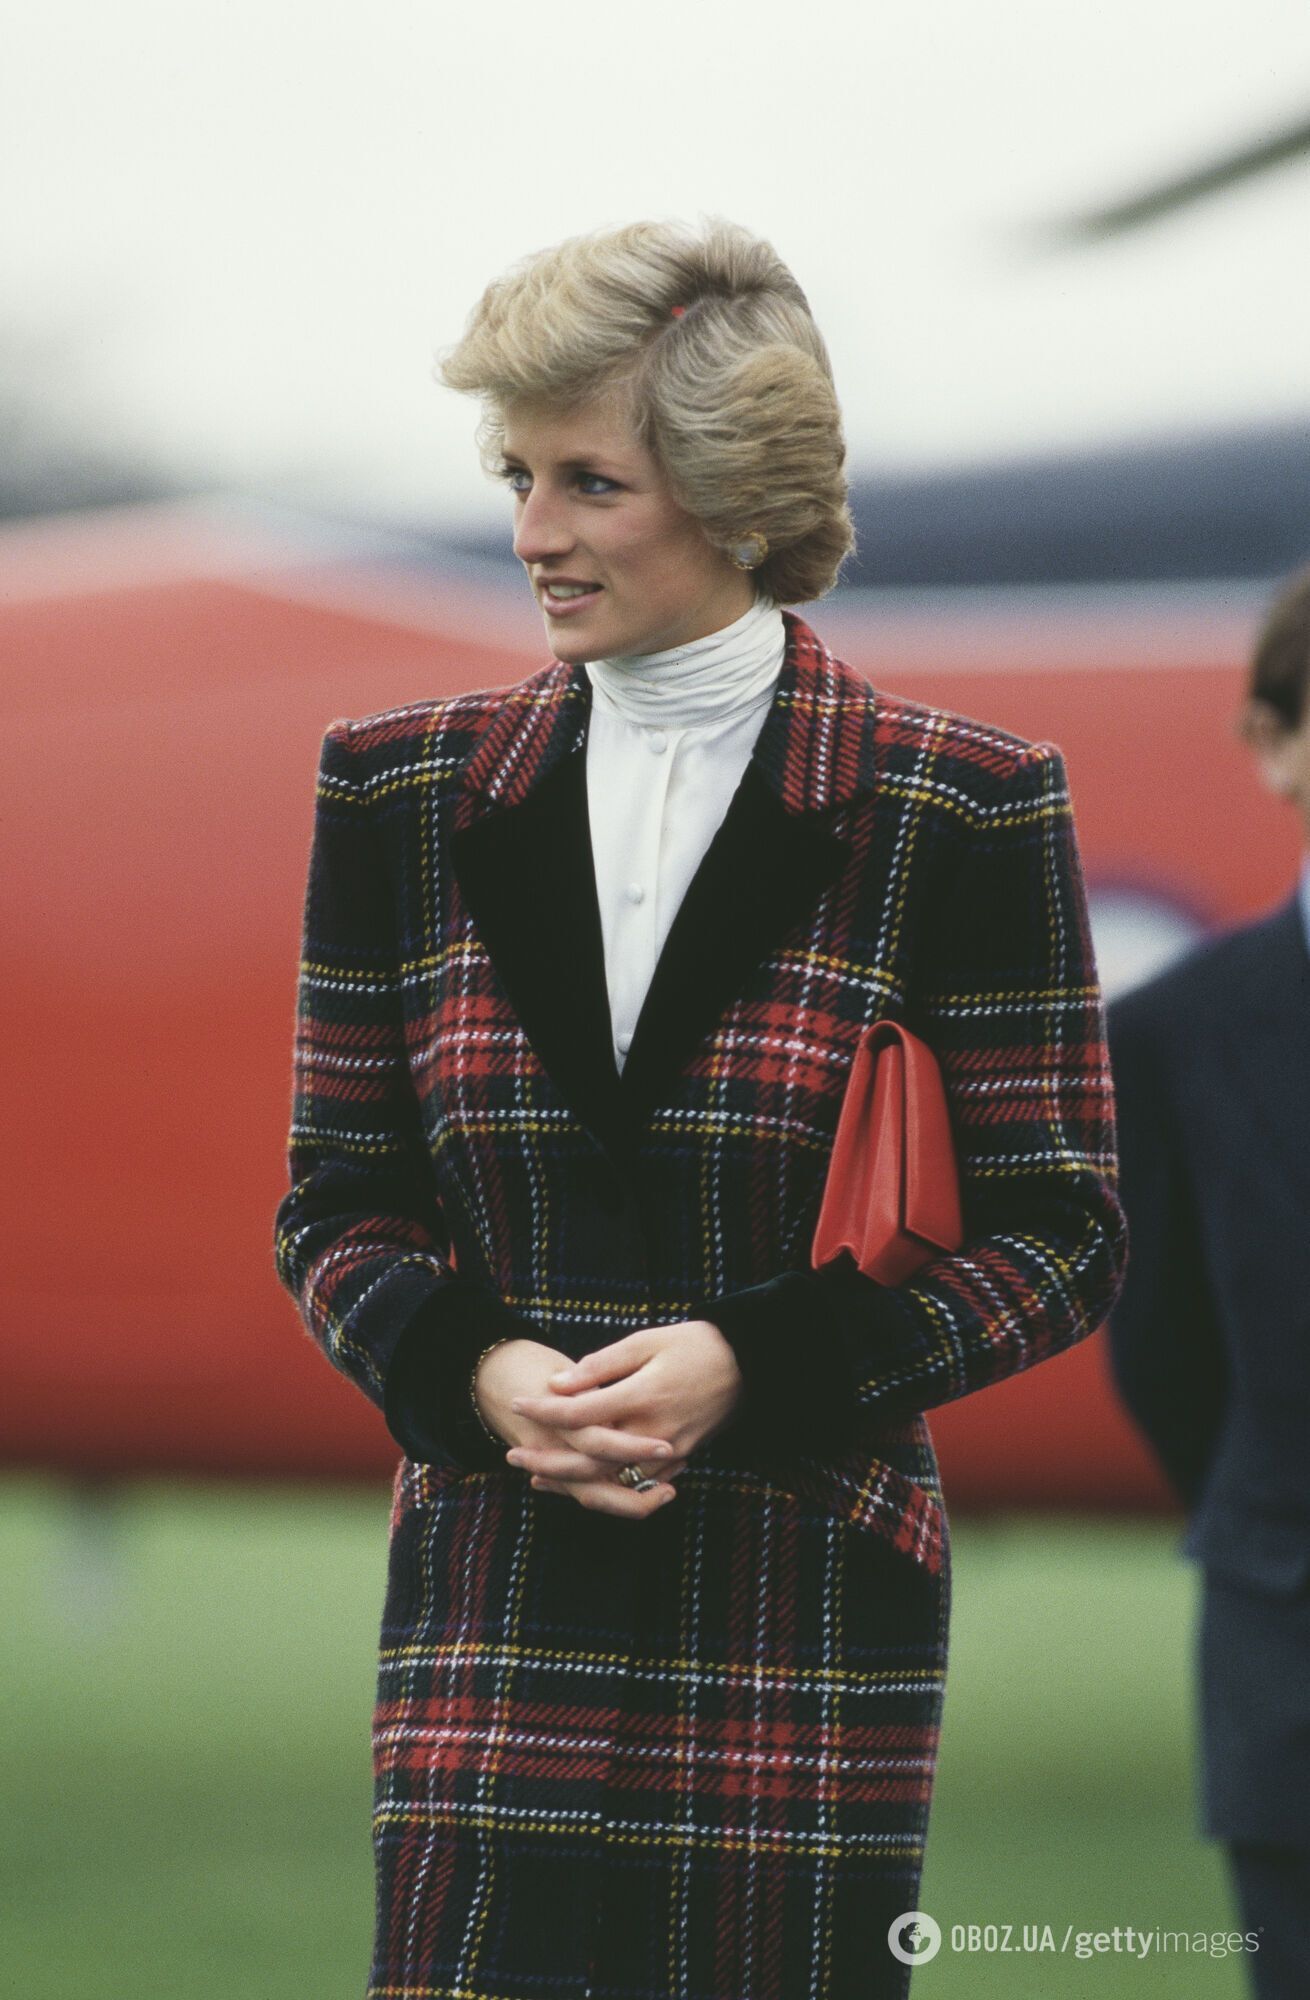 Вспоминаем моду 80-х с леди Ди: стильные зимние образы от герцогини Уэльской